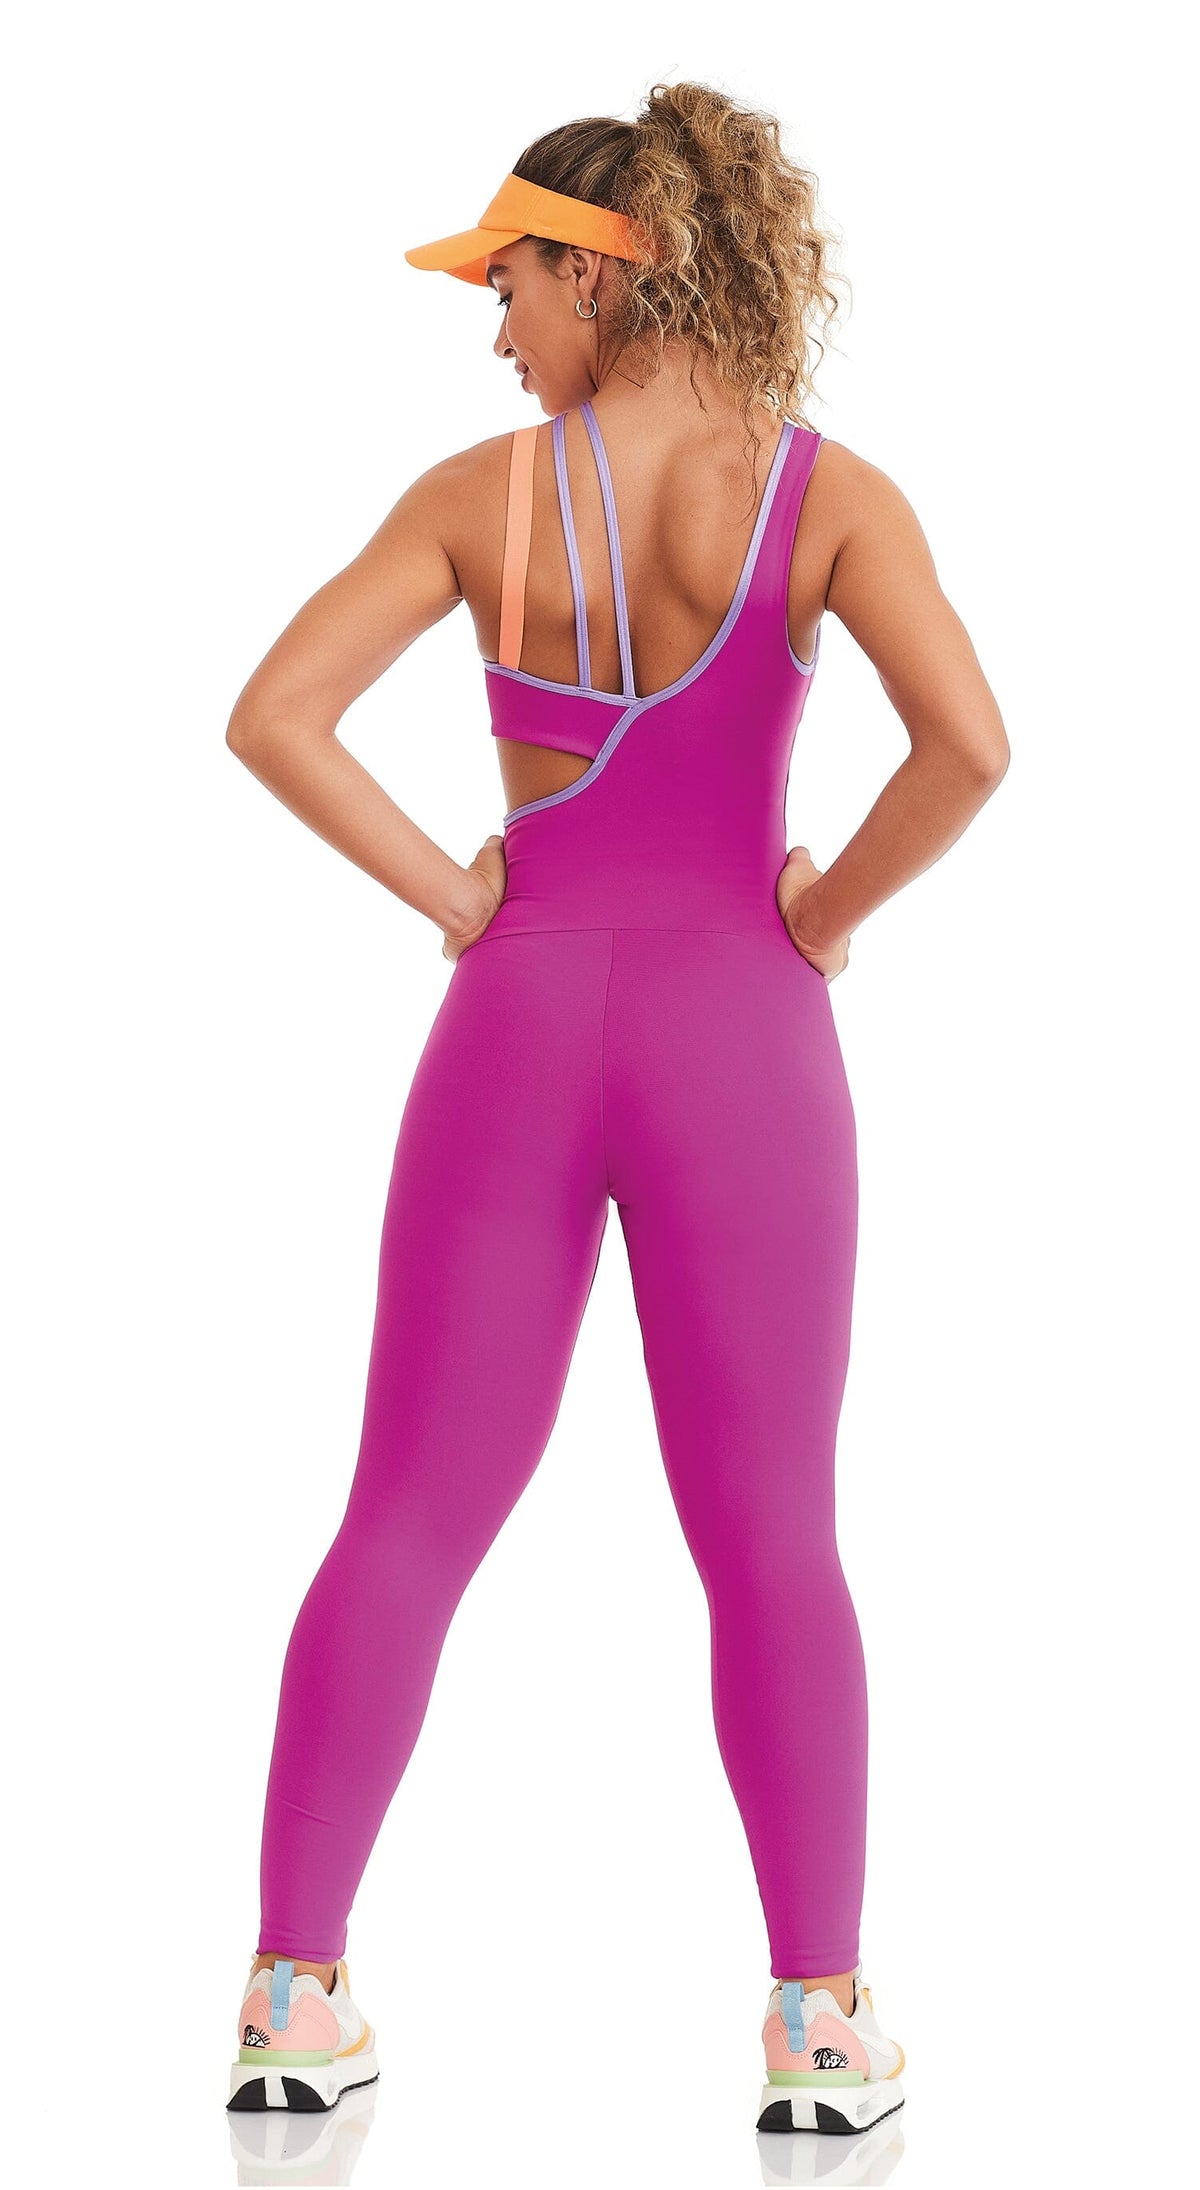 Brazilian Workout Jumpsuit - Sensation Hot Pink  Unique jumpsuits, Fitted  jumpsuit, Leggings fashion